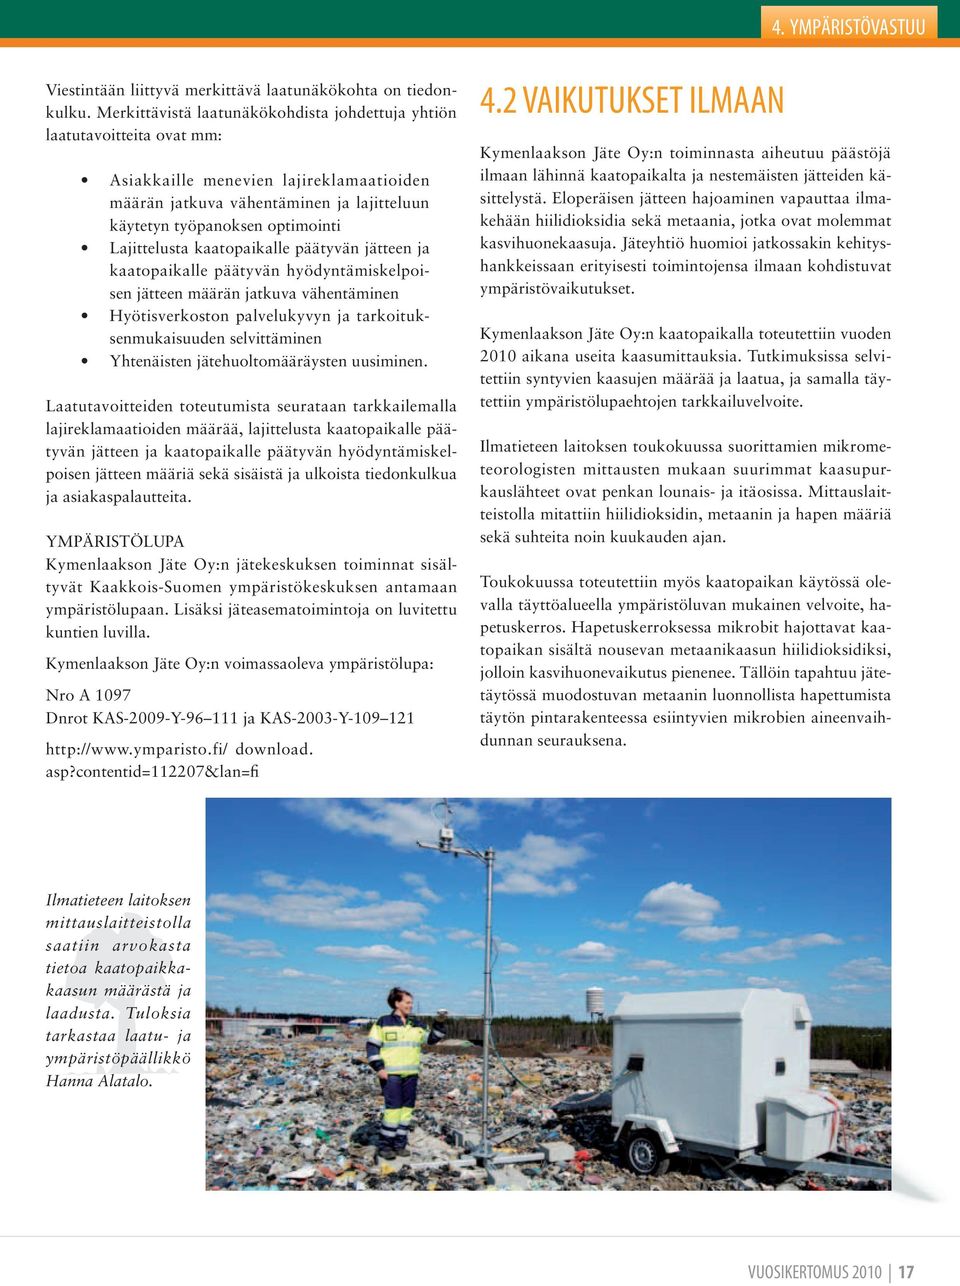 Lajittelusta kaatopaikalle päätyvän jätteen ja kaatopaikalle päätyvän hyödyntämiskelpoisen jätteen määrän jatkuva vähentäminen Hyötisverkoston palvelukyvyn ja tarkoituksenmukaisuuden selvittäminen